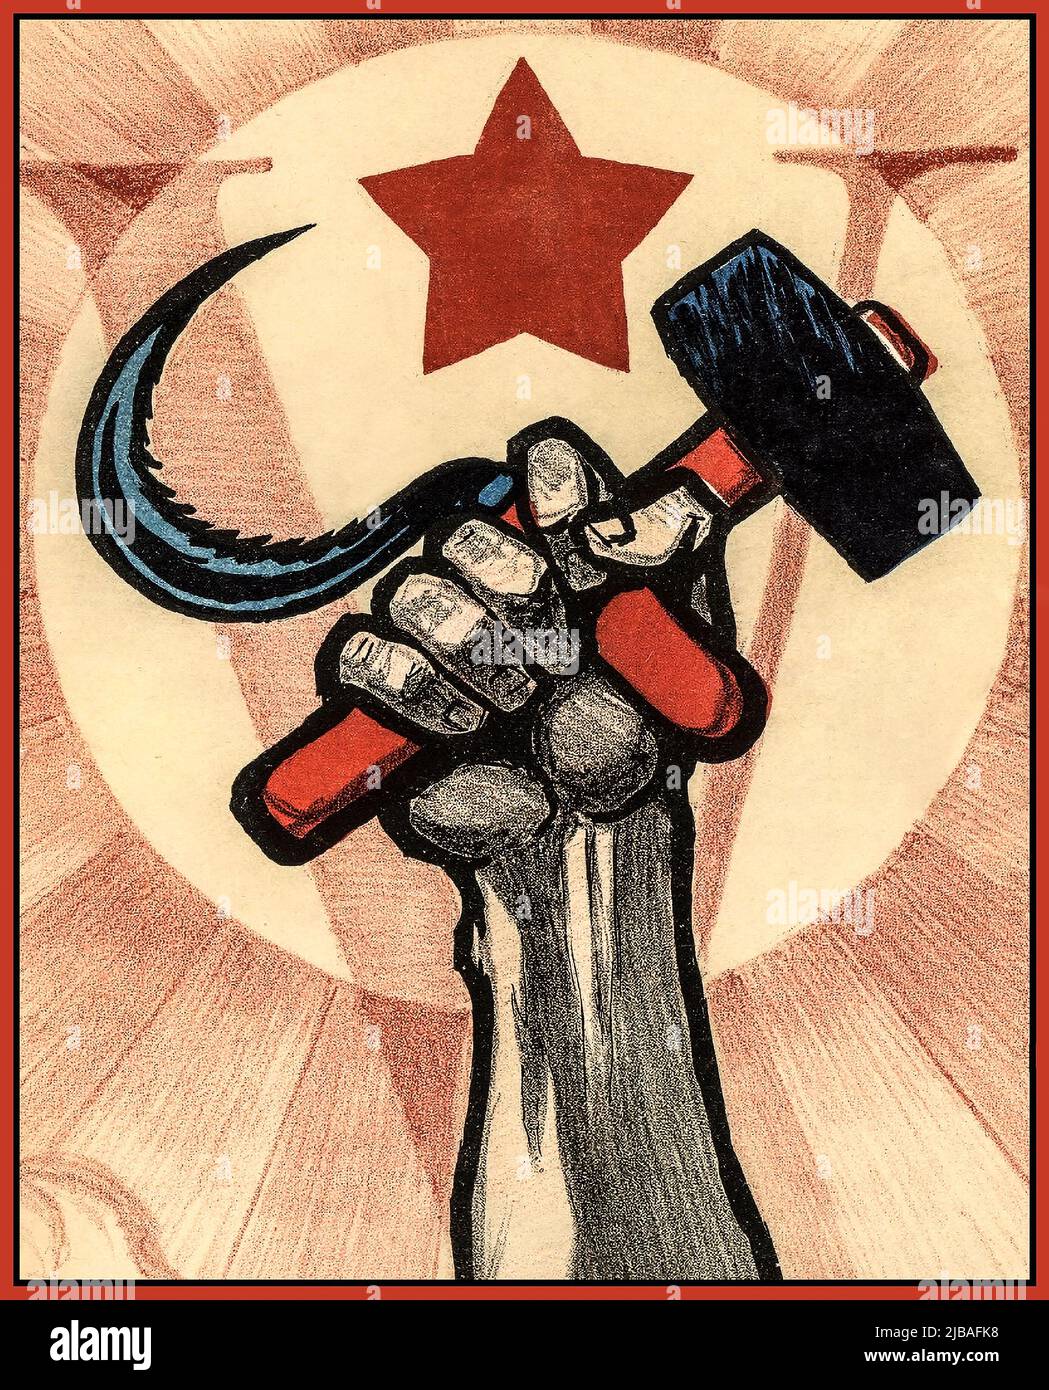 HAMMER & FALCLE Vintage 1920s Propaganda poster politico sovietico dedicato al 5th° anniversario della Rivoluzione d'Ottobre e IV Congresso dell'Internazionale Comunista. Unione Sovietica URSS Russia Data 1922 Foto Stock